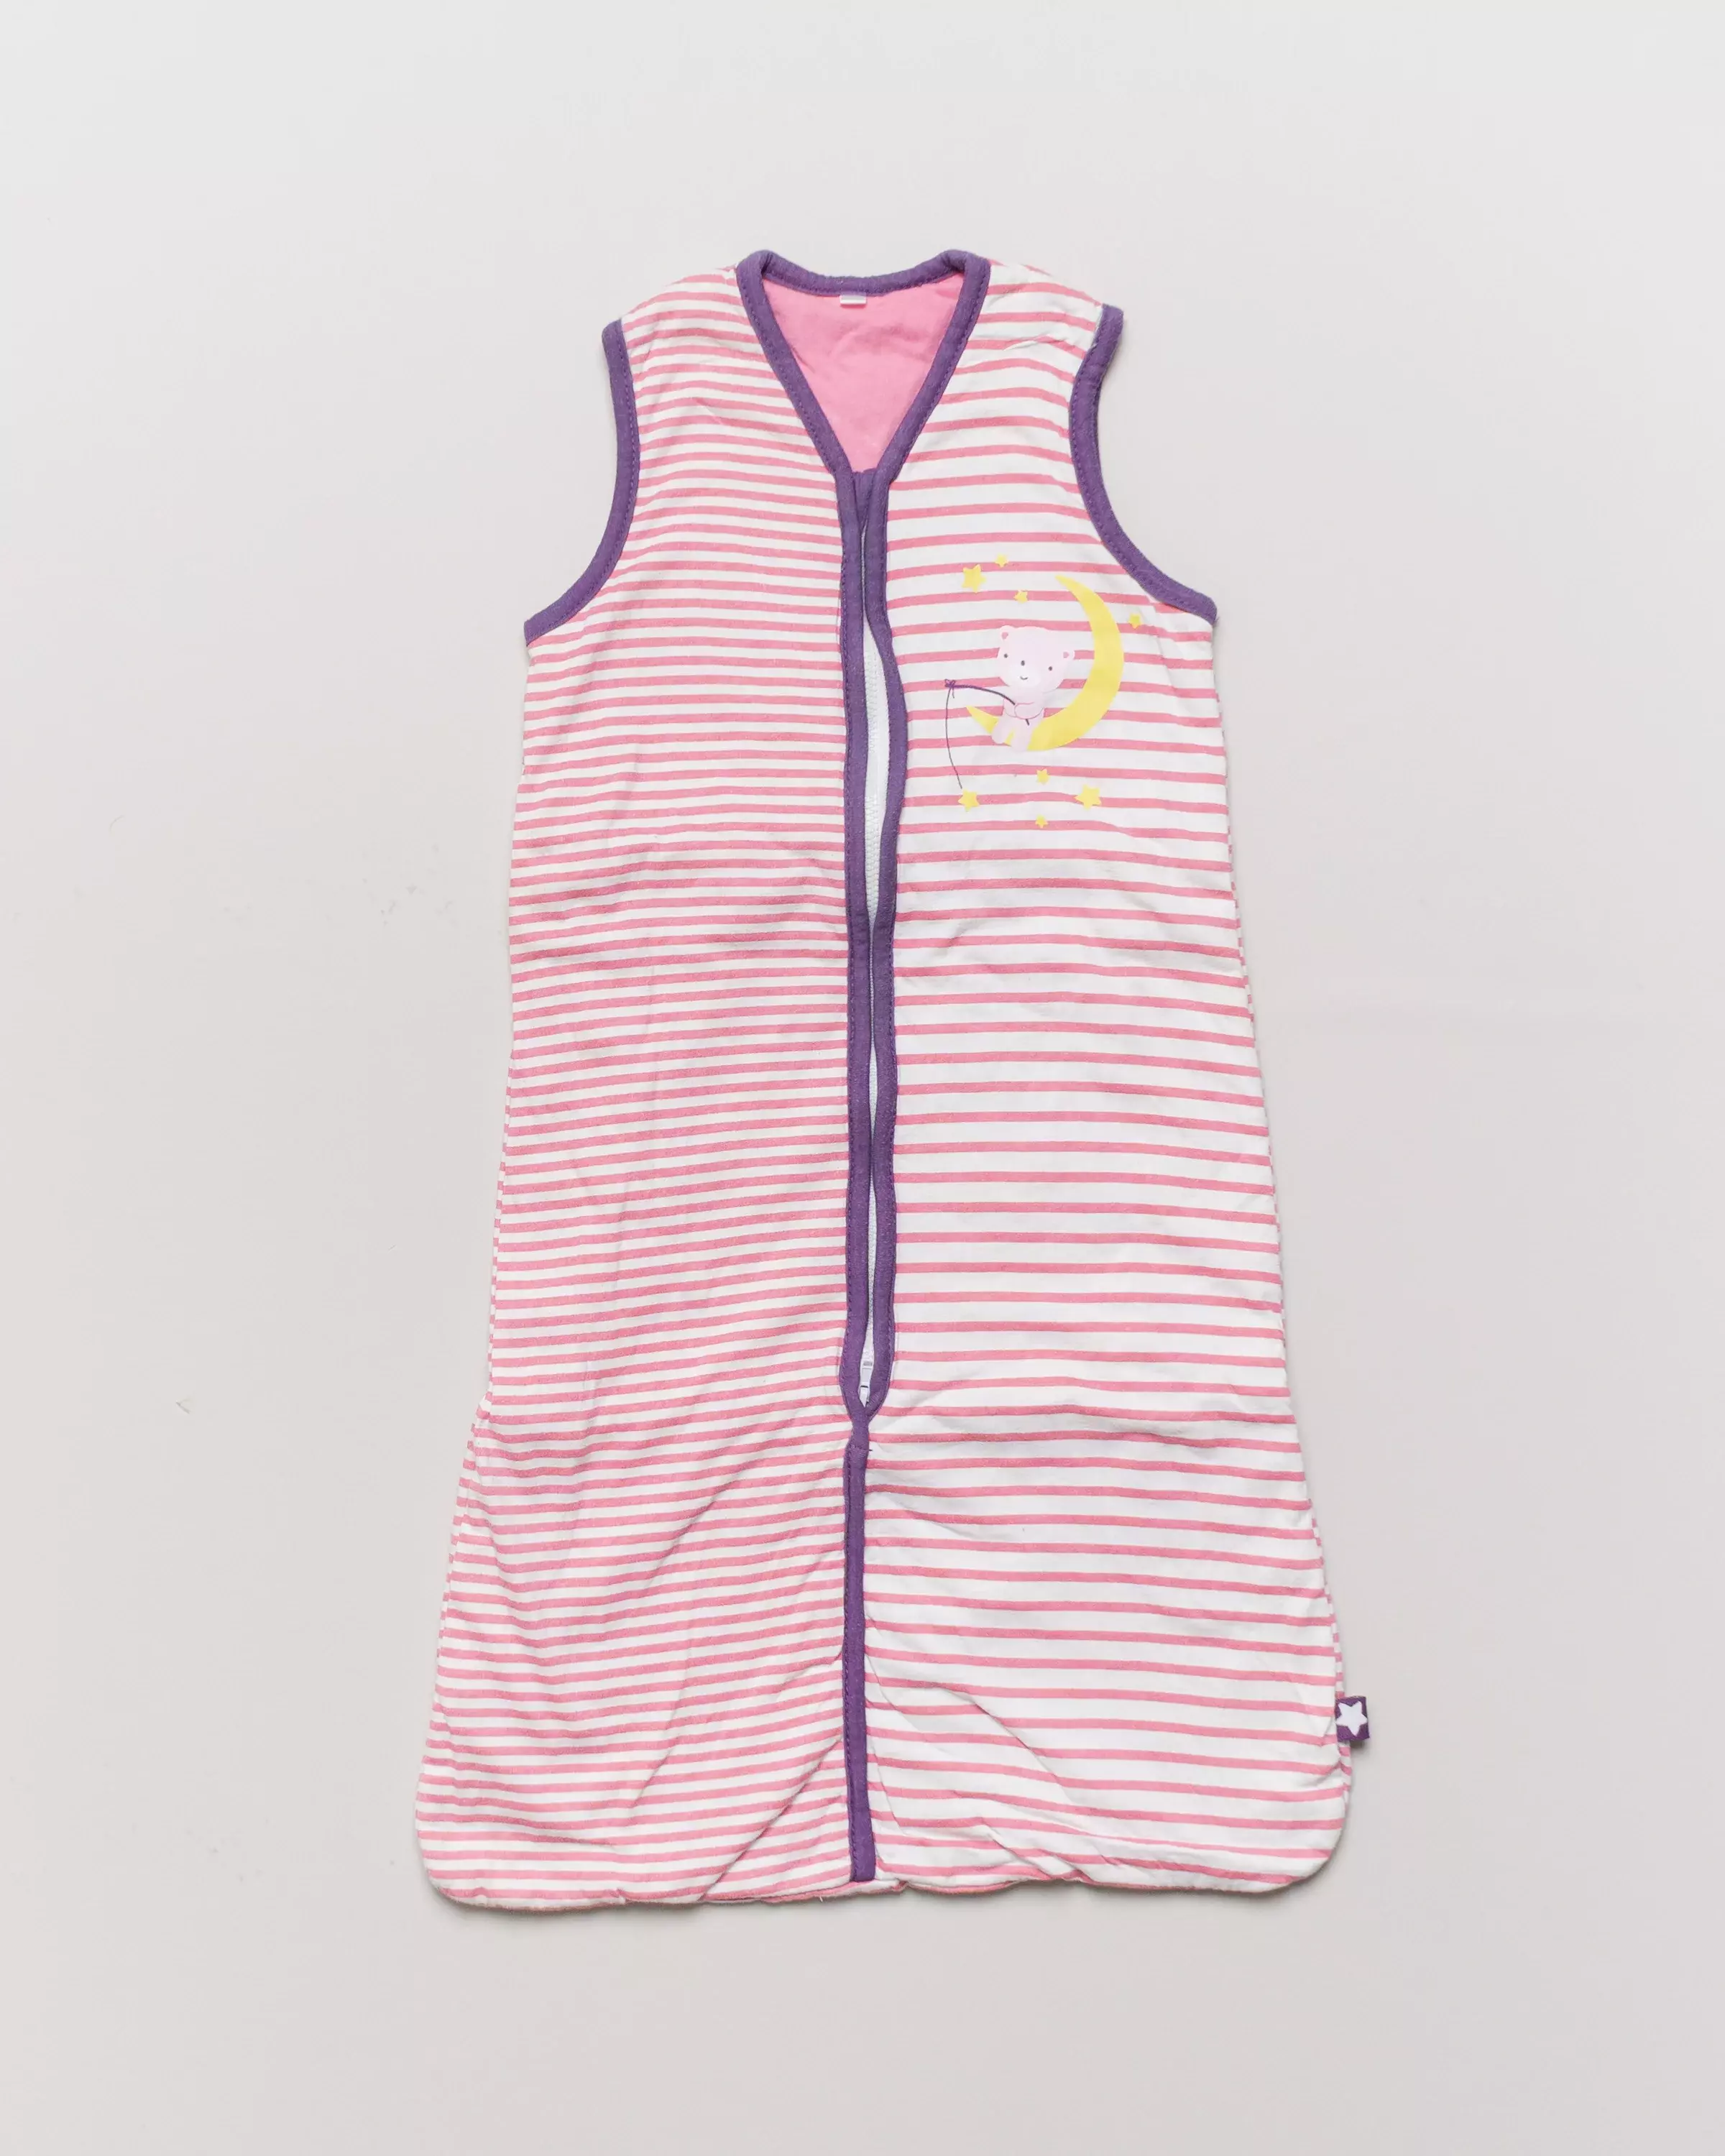 Schlafsack in Gr. 62/68 – gefüttert Streifen Mädchen pink lila Mond Sterne